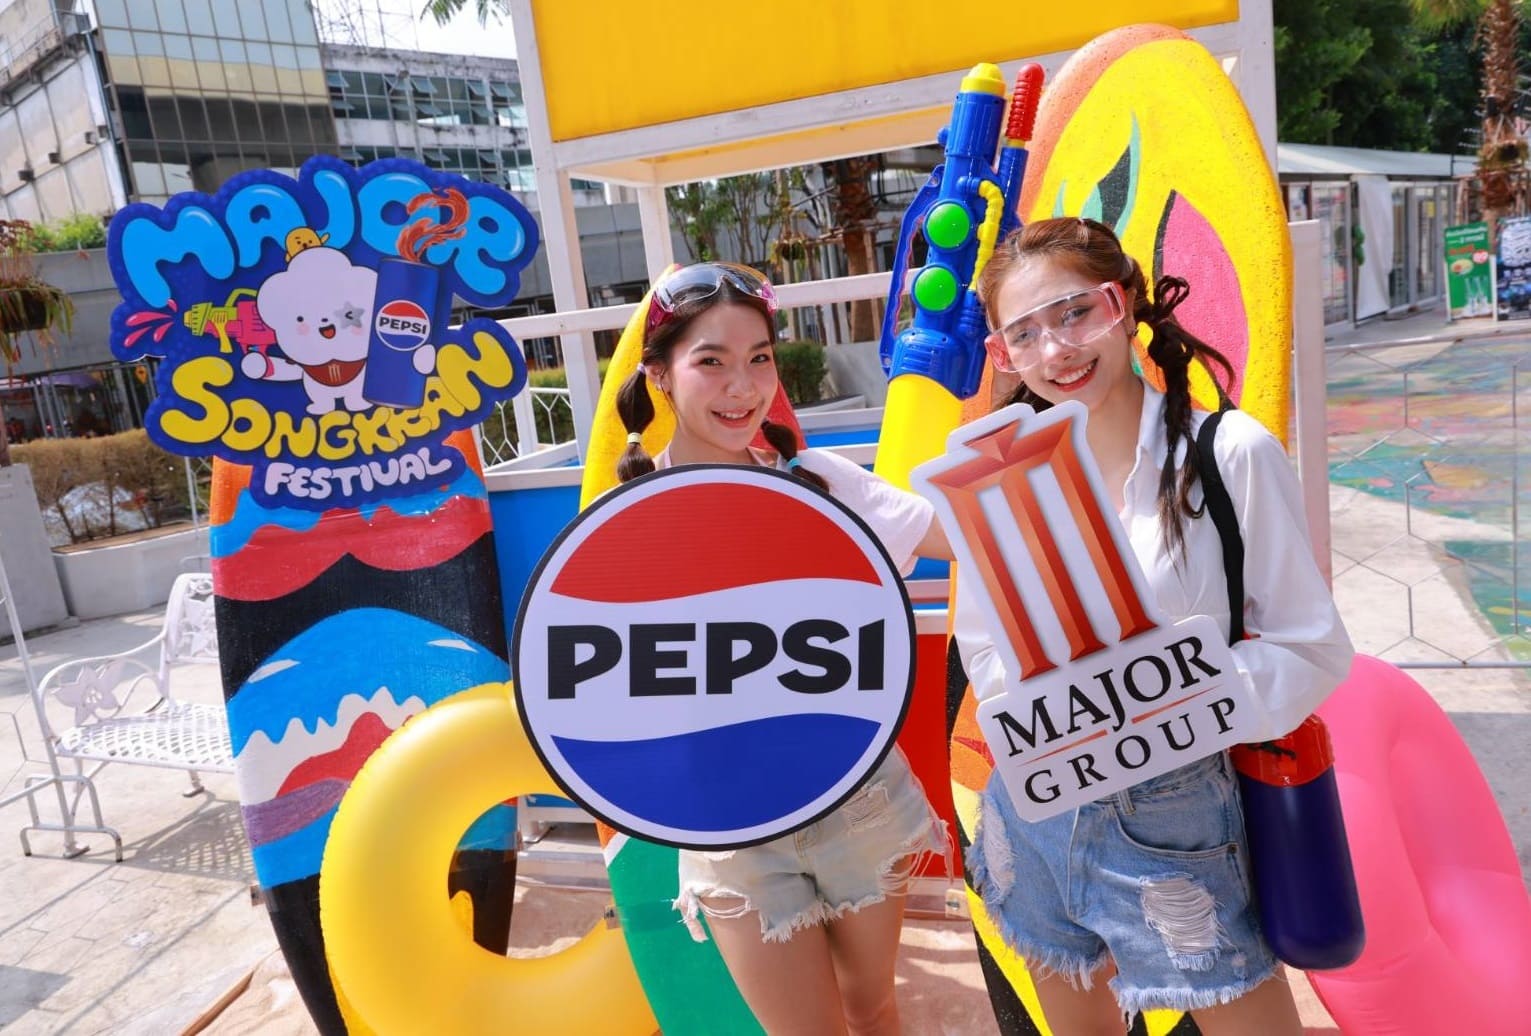 เมเจอร์ ซีนีเพล็กซ์ ผนึก เป๊ปซี่ สาดความสุขและสนุกแบบฉ่ำ ๆ กับงาน “Major Songkran Festival” ตั้งแต่ 10-18 เมษายนนี้ ที่ เมเจอร์ ซีนีเพล็กซ์ รัชโยธิน